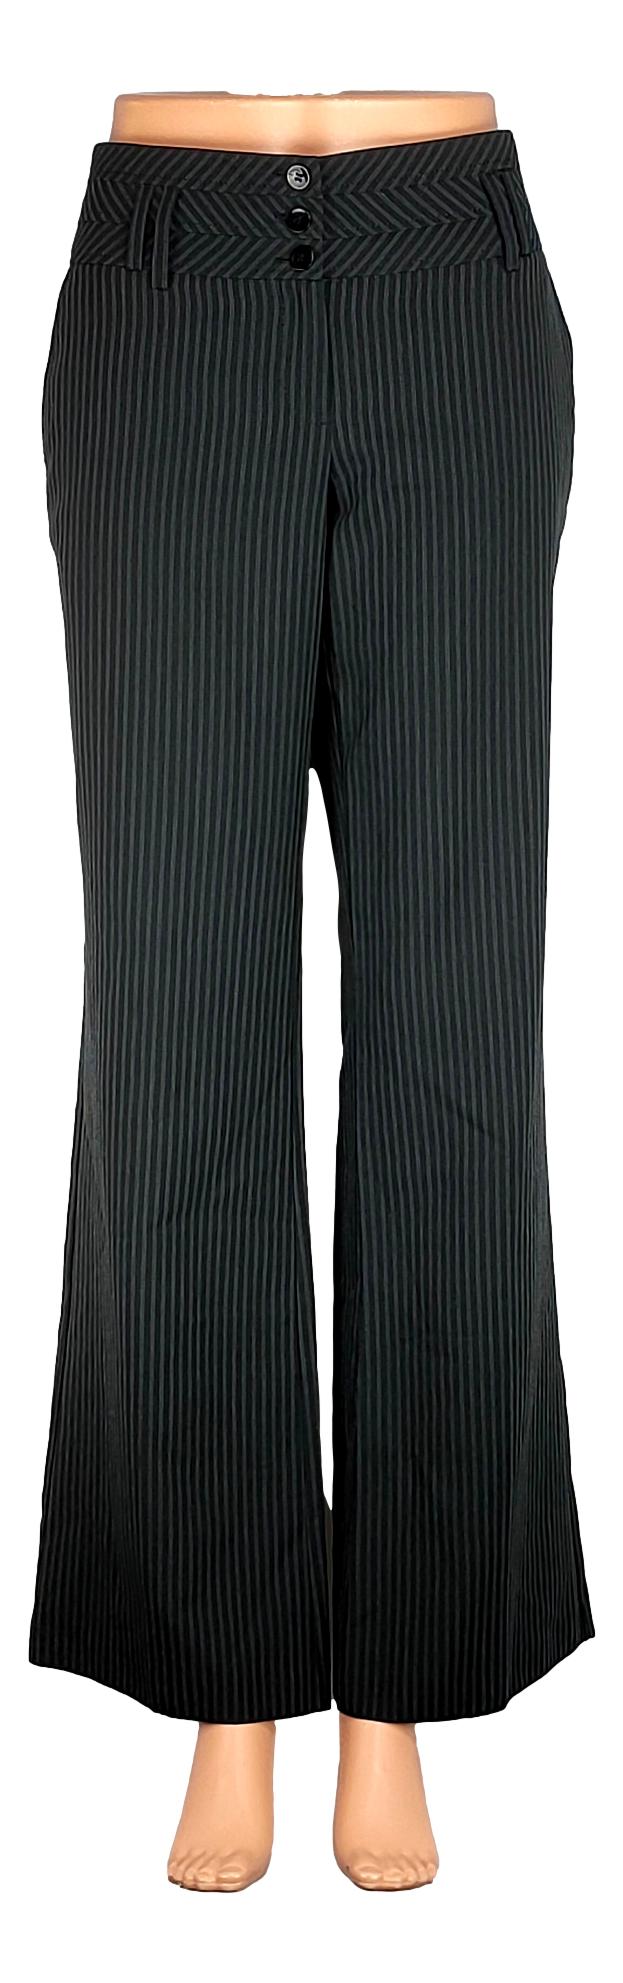 Pantalon New Look - Taille 40